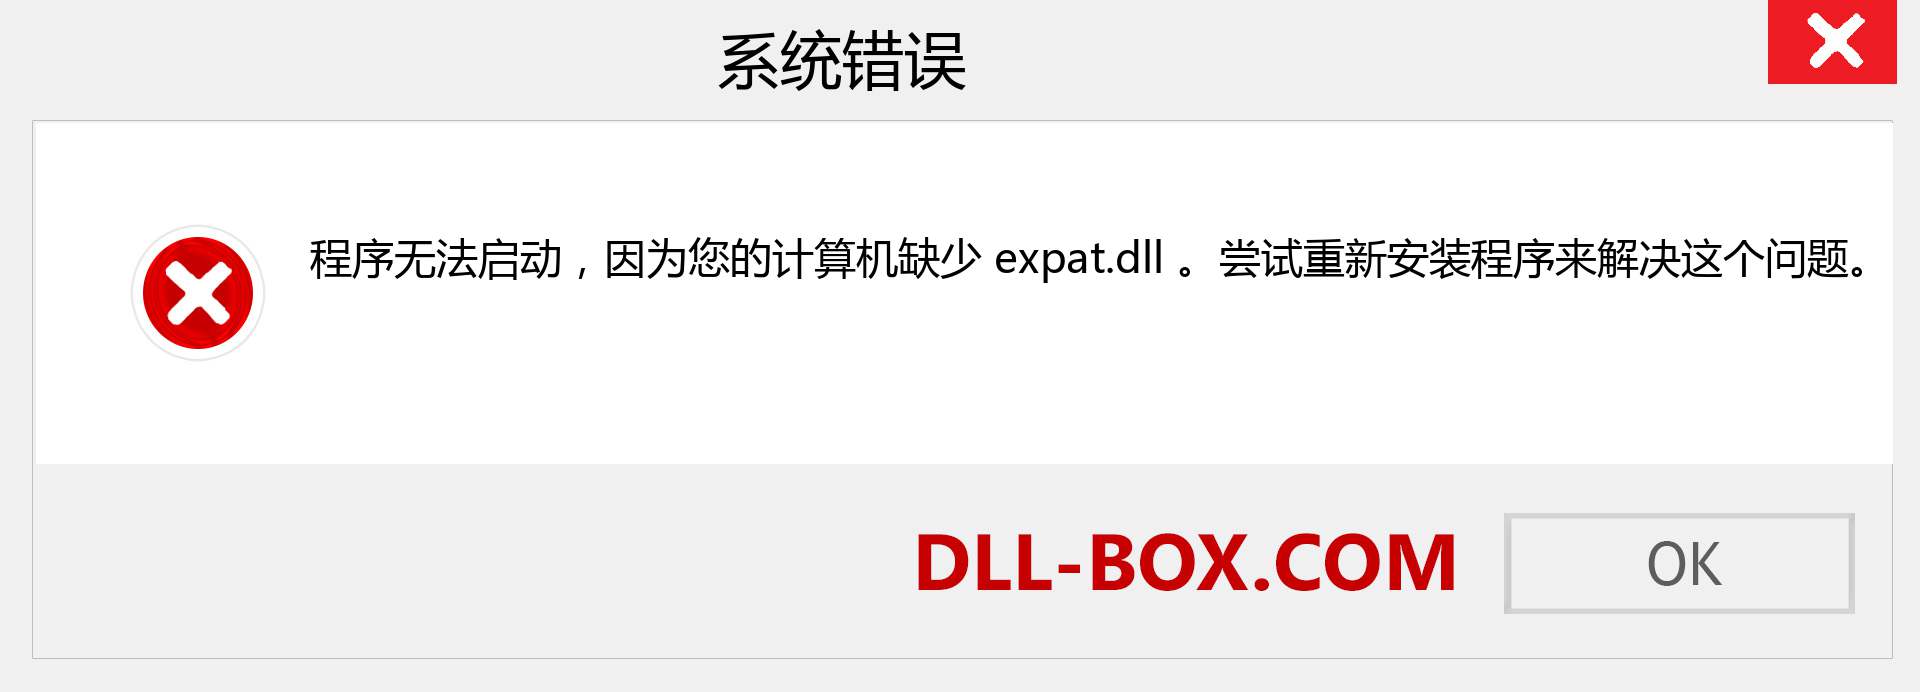 expat.dll 文件丢失？。 适用于 Windows 7、8、10 的下载 - 修复 Windows、照片、图像上的 expat dll 丢失错误